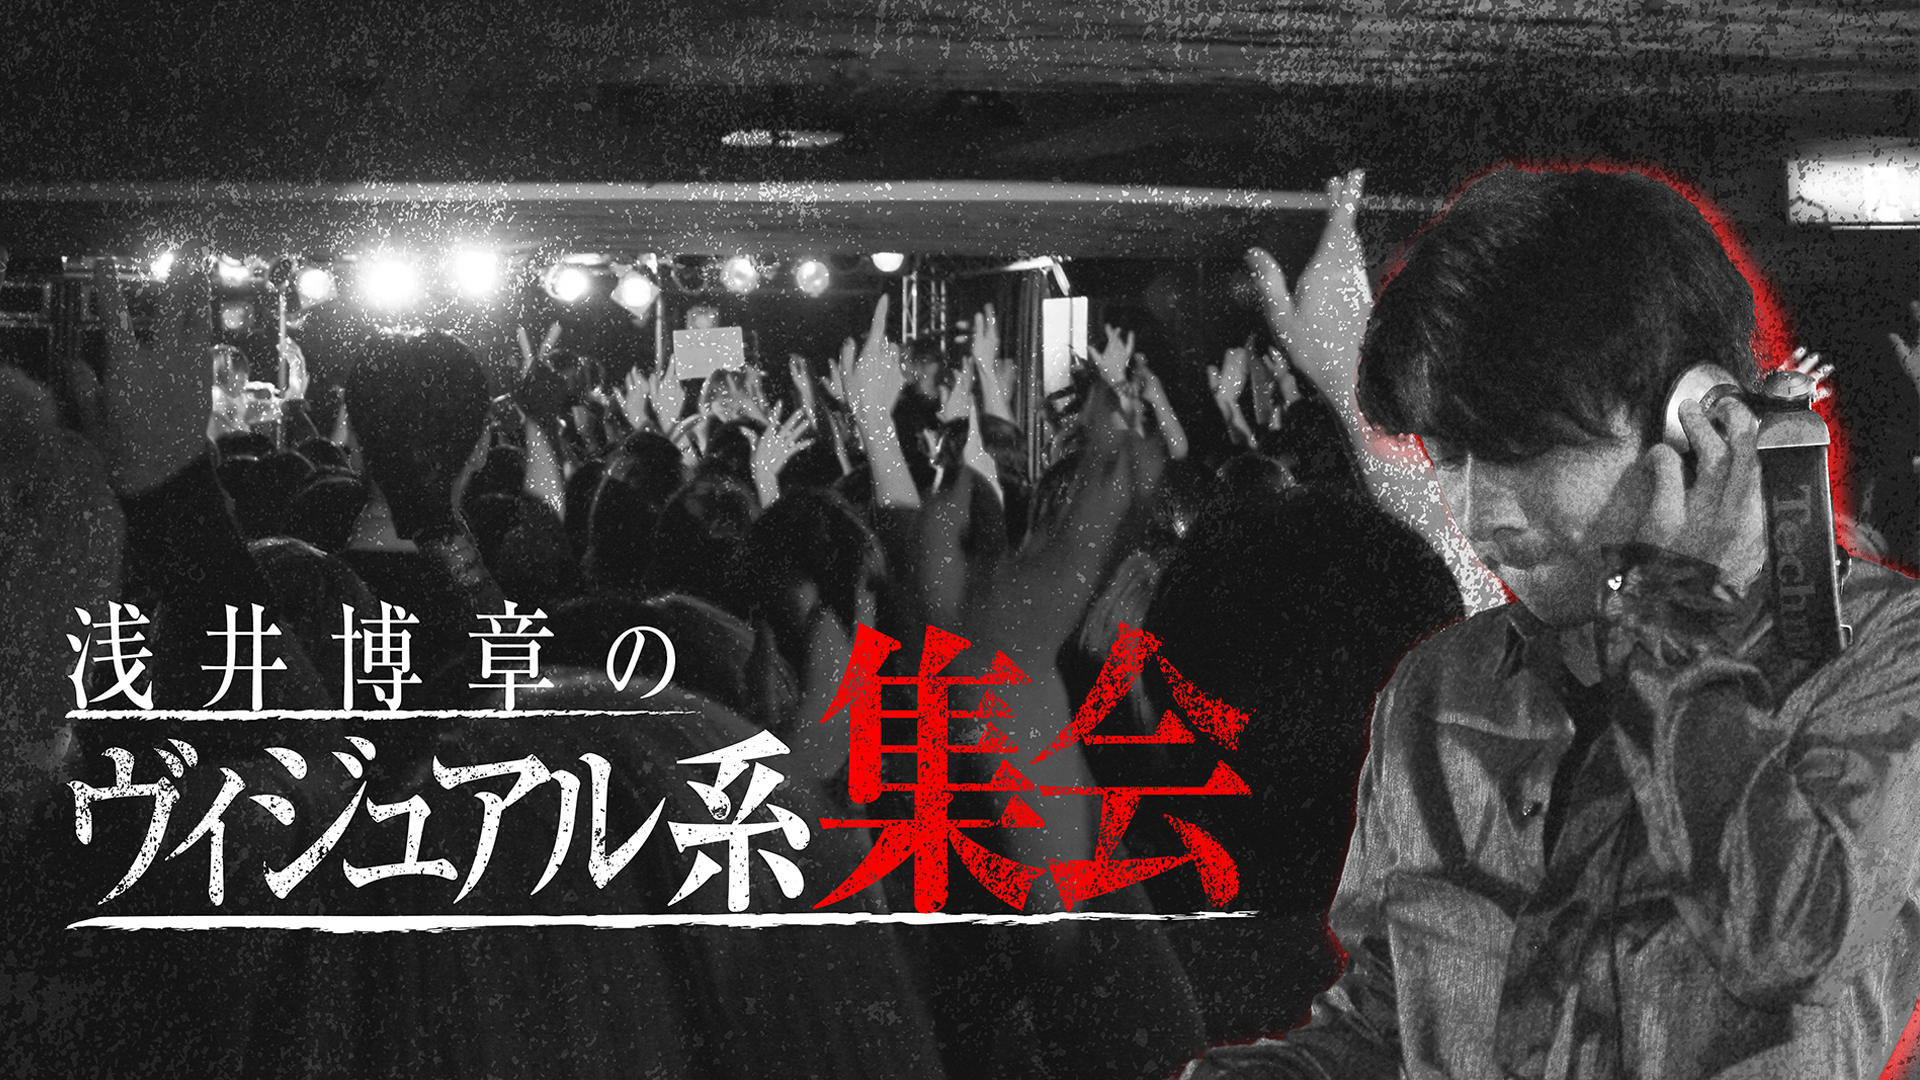 浅井博章 - 浅井博章のヴィジュアル系集会 - DMM オンラインサロン